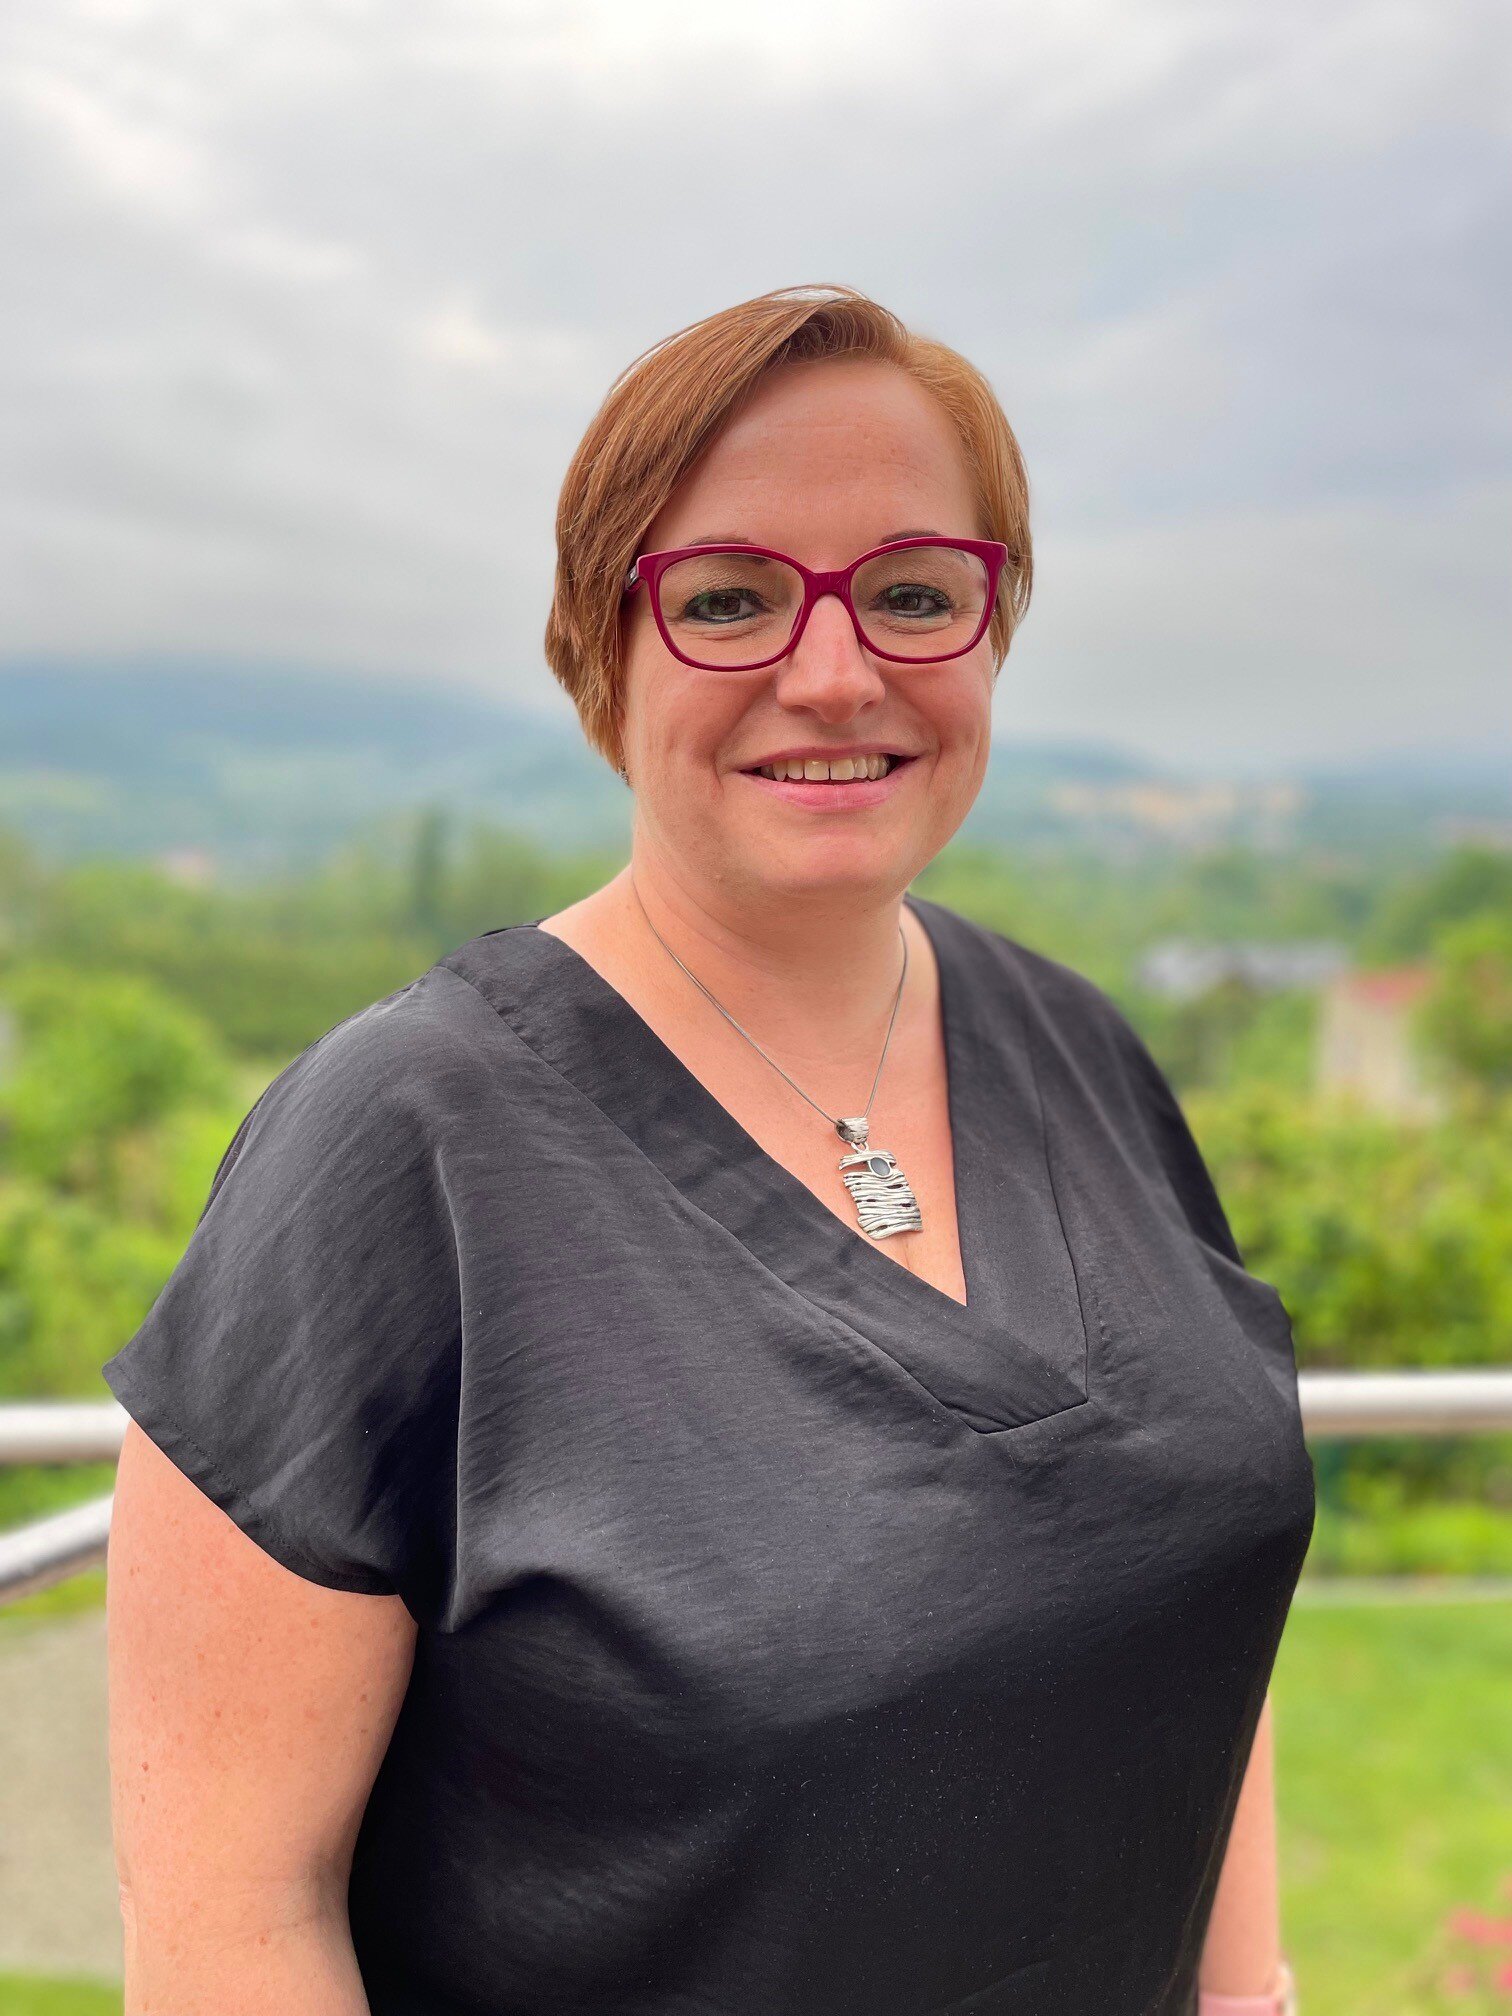 Agnieszka Moron, direktør for helse- og sosialavdelingen i kommunen, vil samarbeide tettere med tillitsvalgte i utviklingen av tjenestene.